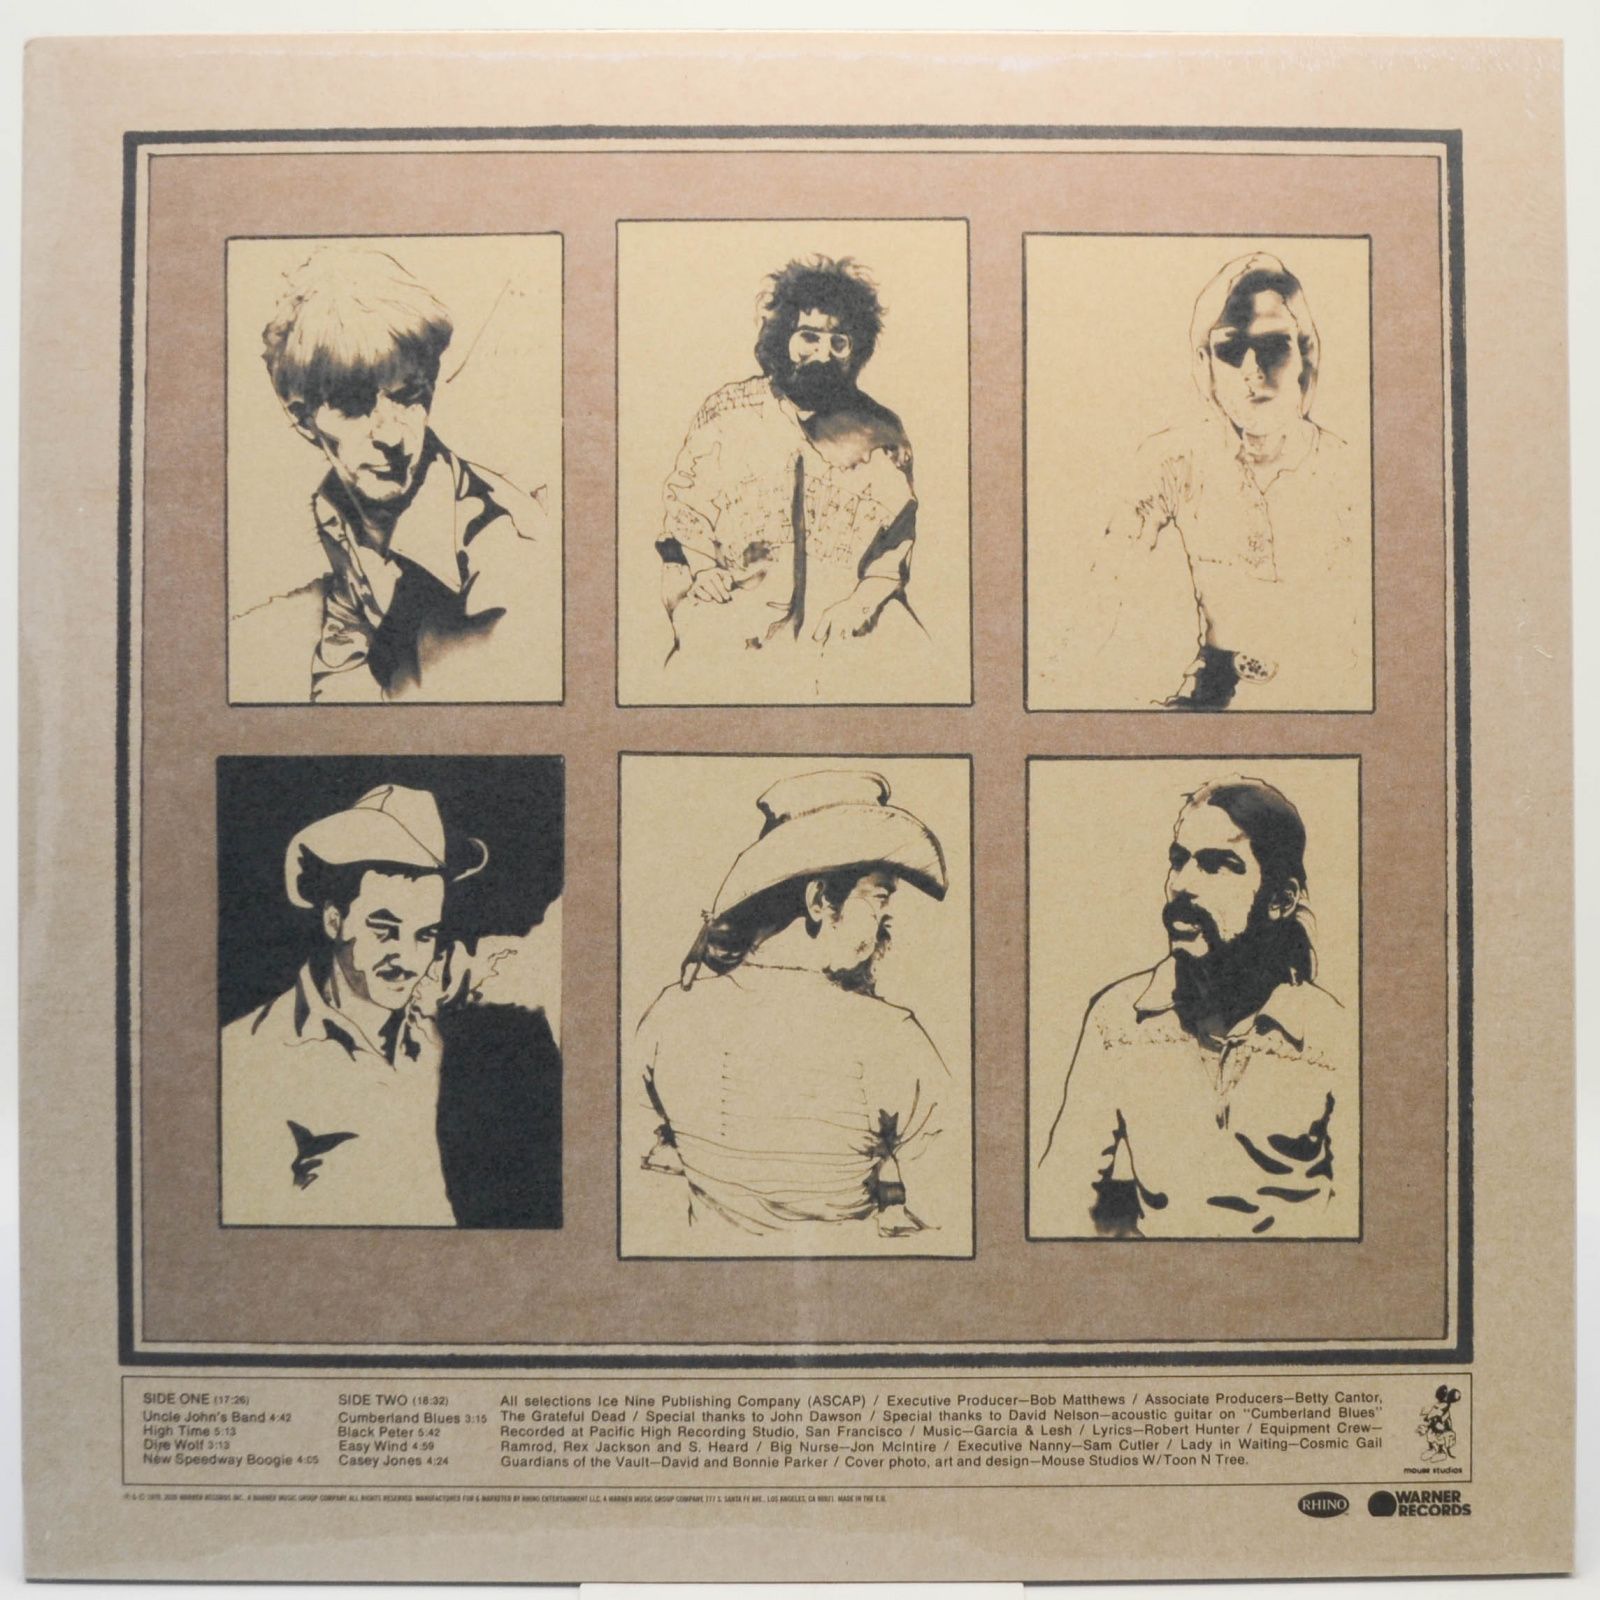 Grateful Dead — Workingman's Dead, 1970